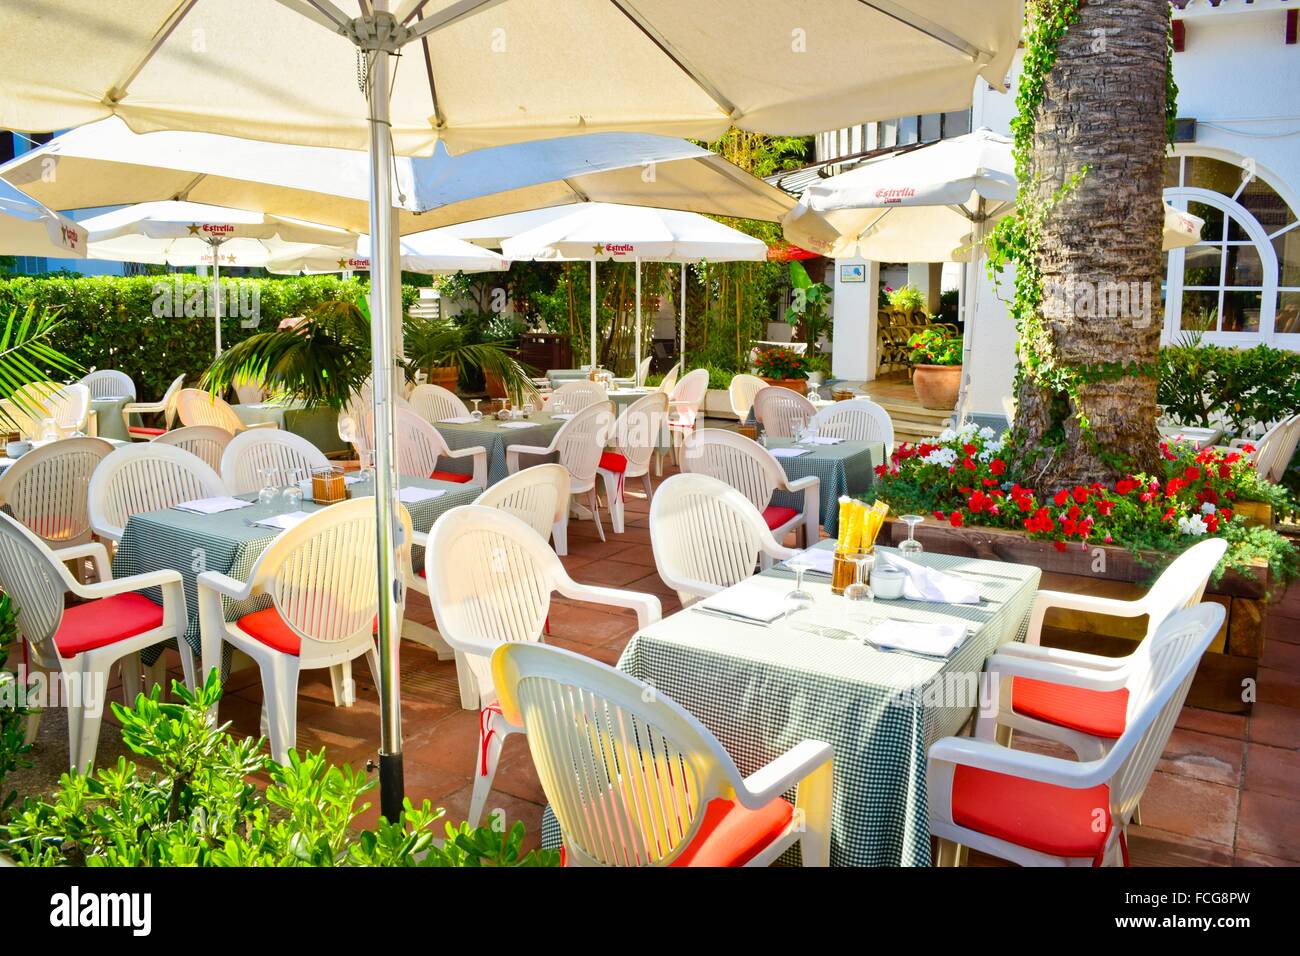 Restaurant im Freien, Tischen, Stühlen und Sonnenschirmen. Castelldefels, Barcelona Provinz, Katalonien, Spanien. Stockfoto